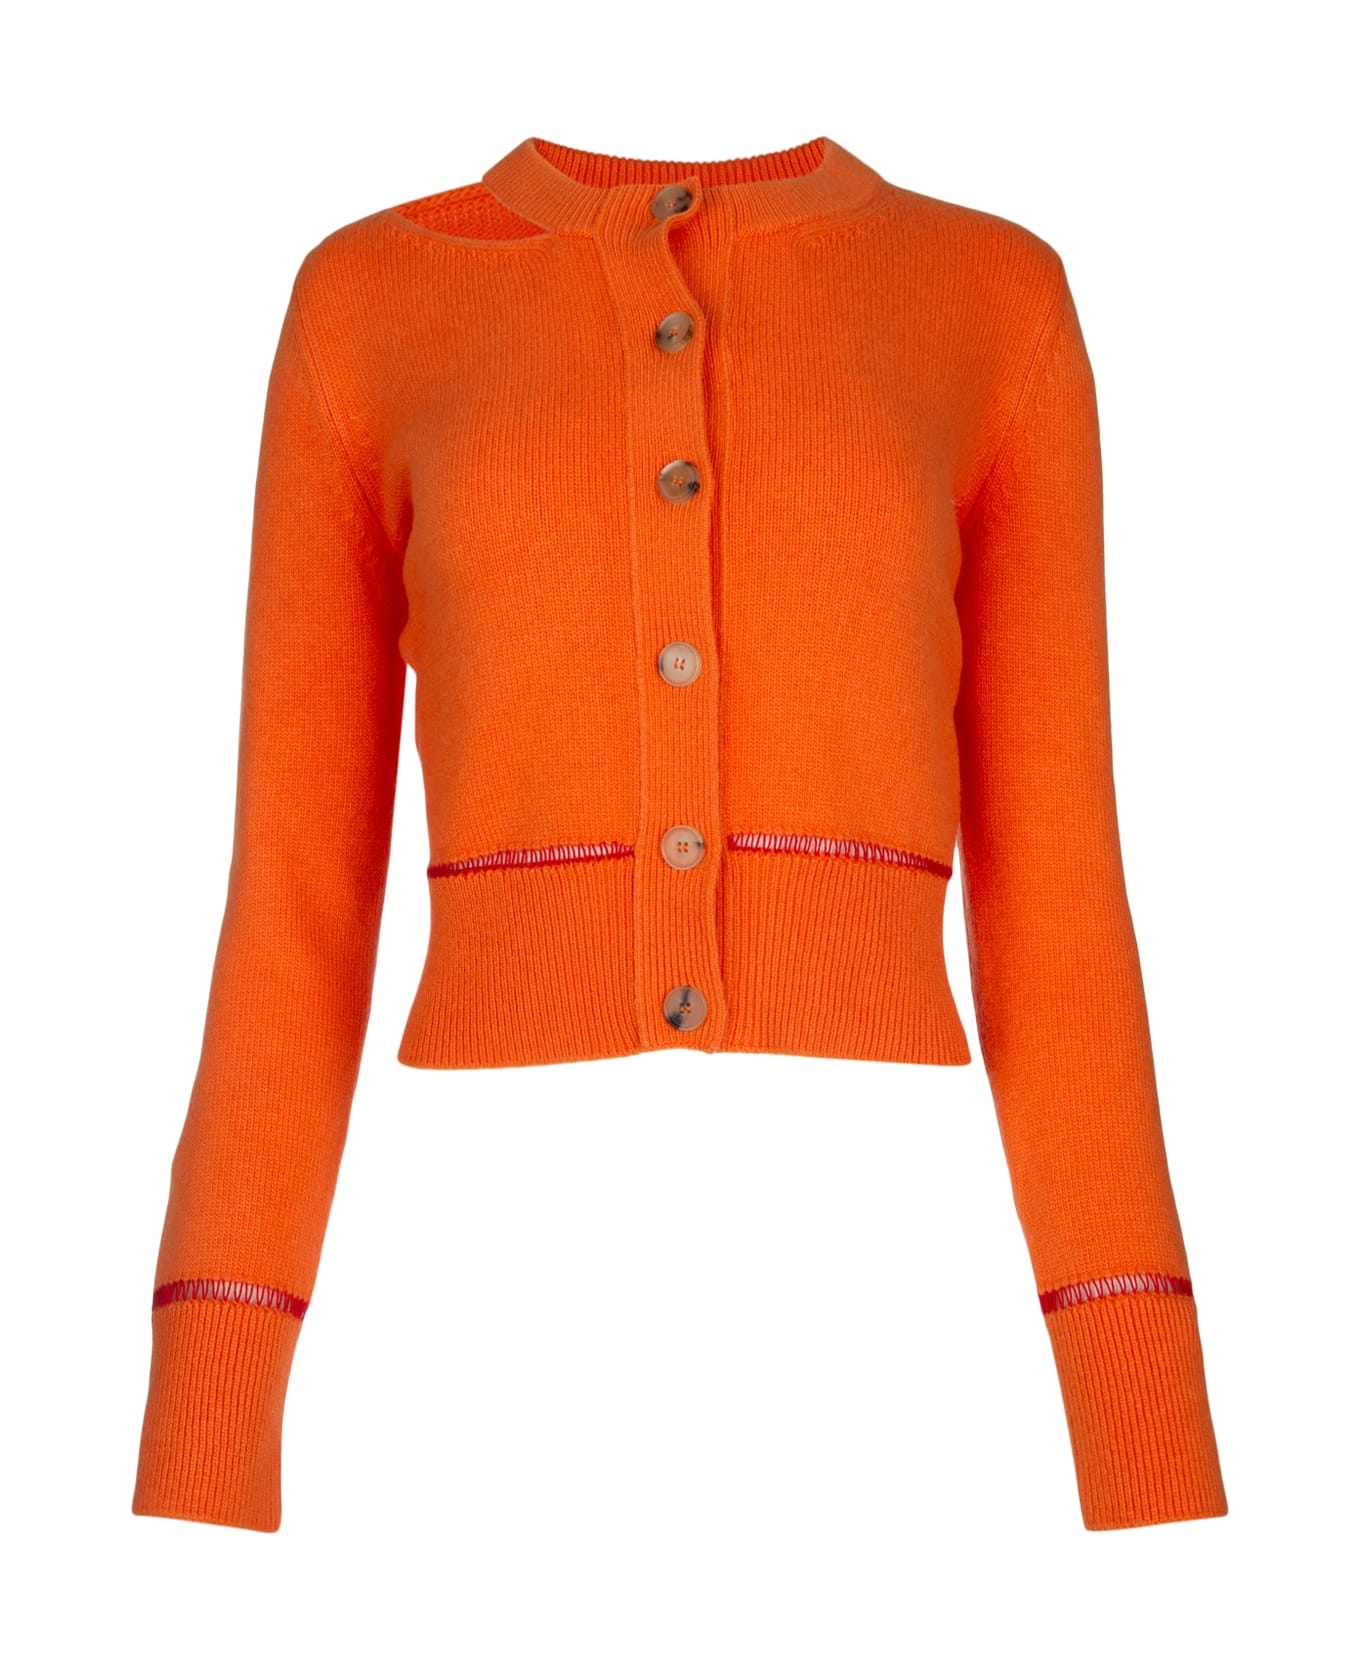 Alexander McQueen Orange Wool Cardigan - 6079 カーディガン